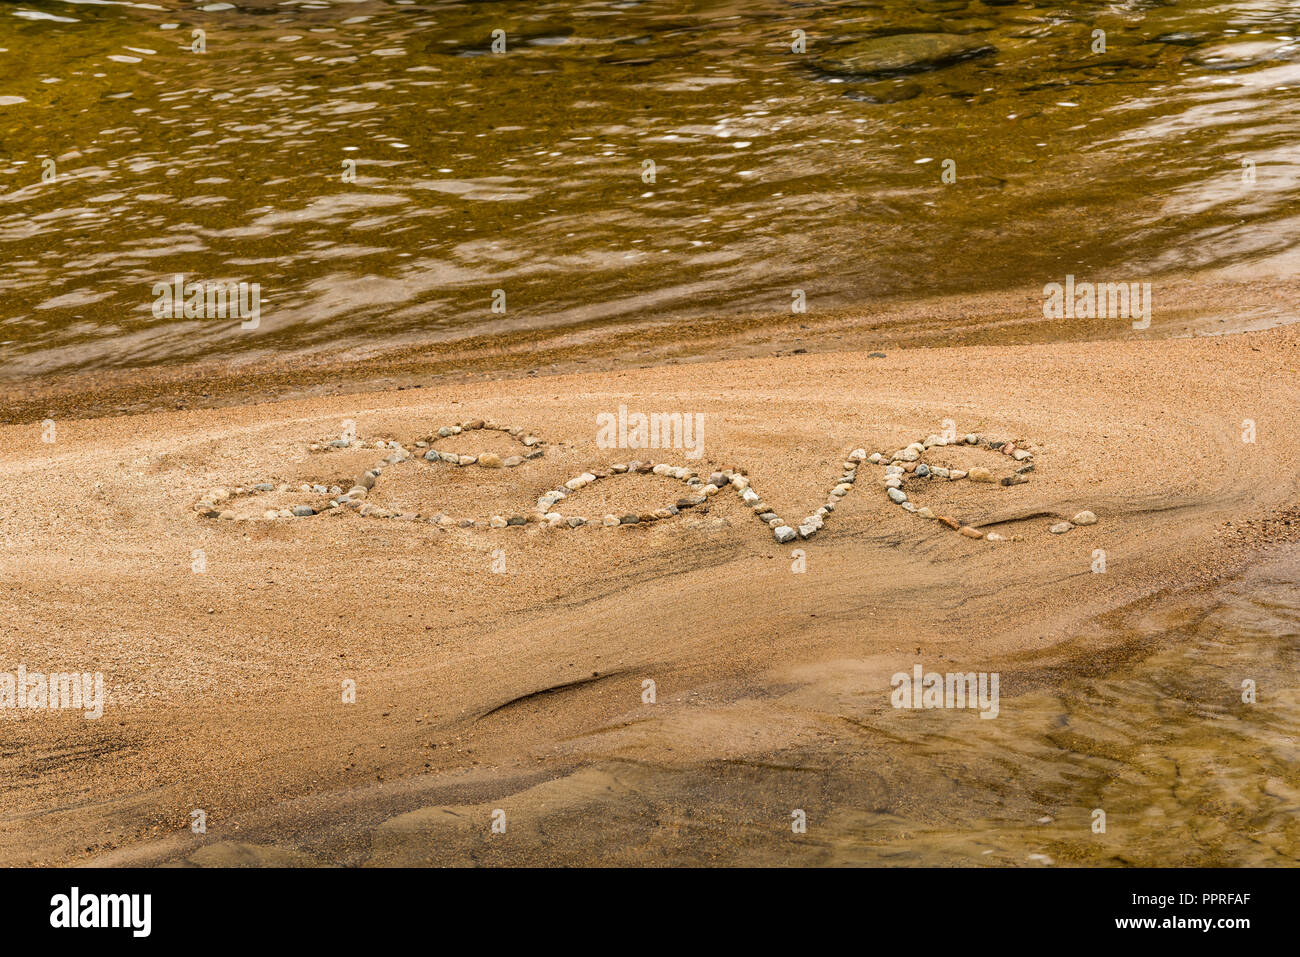 La palabra 'amor' escrito en piedras sobre la arena de la playa White Mountain National Forest, NH Foto de stock